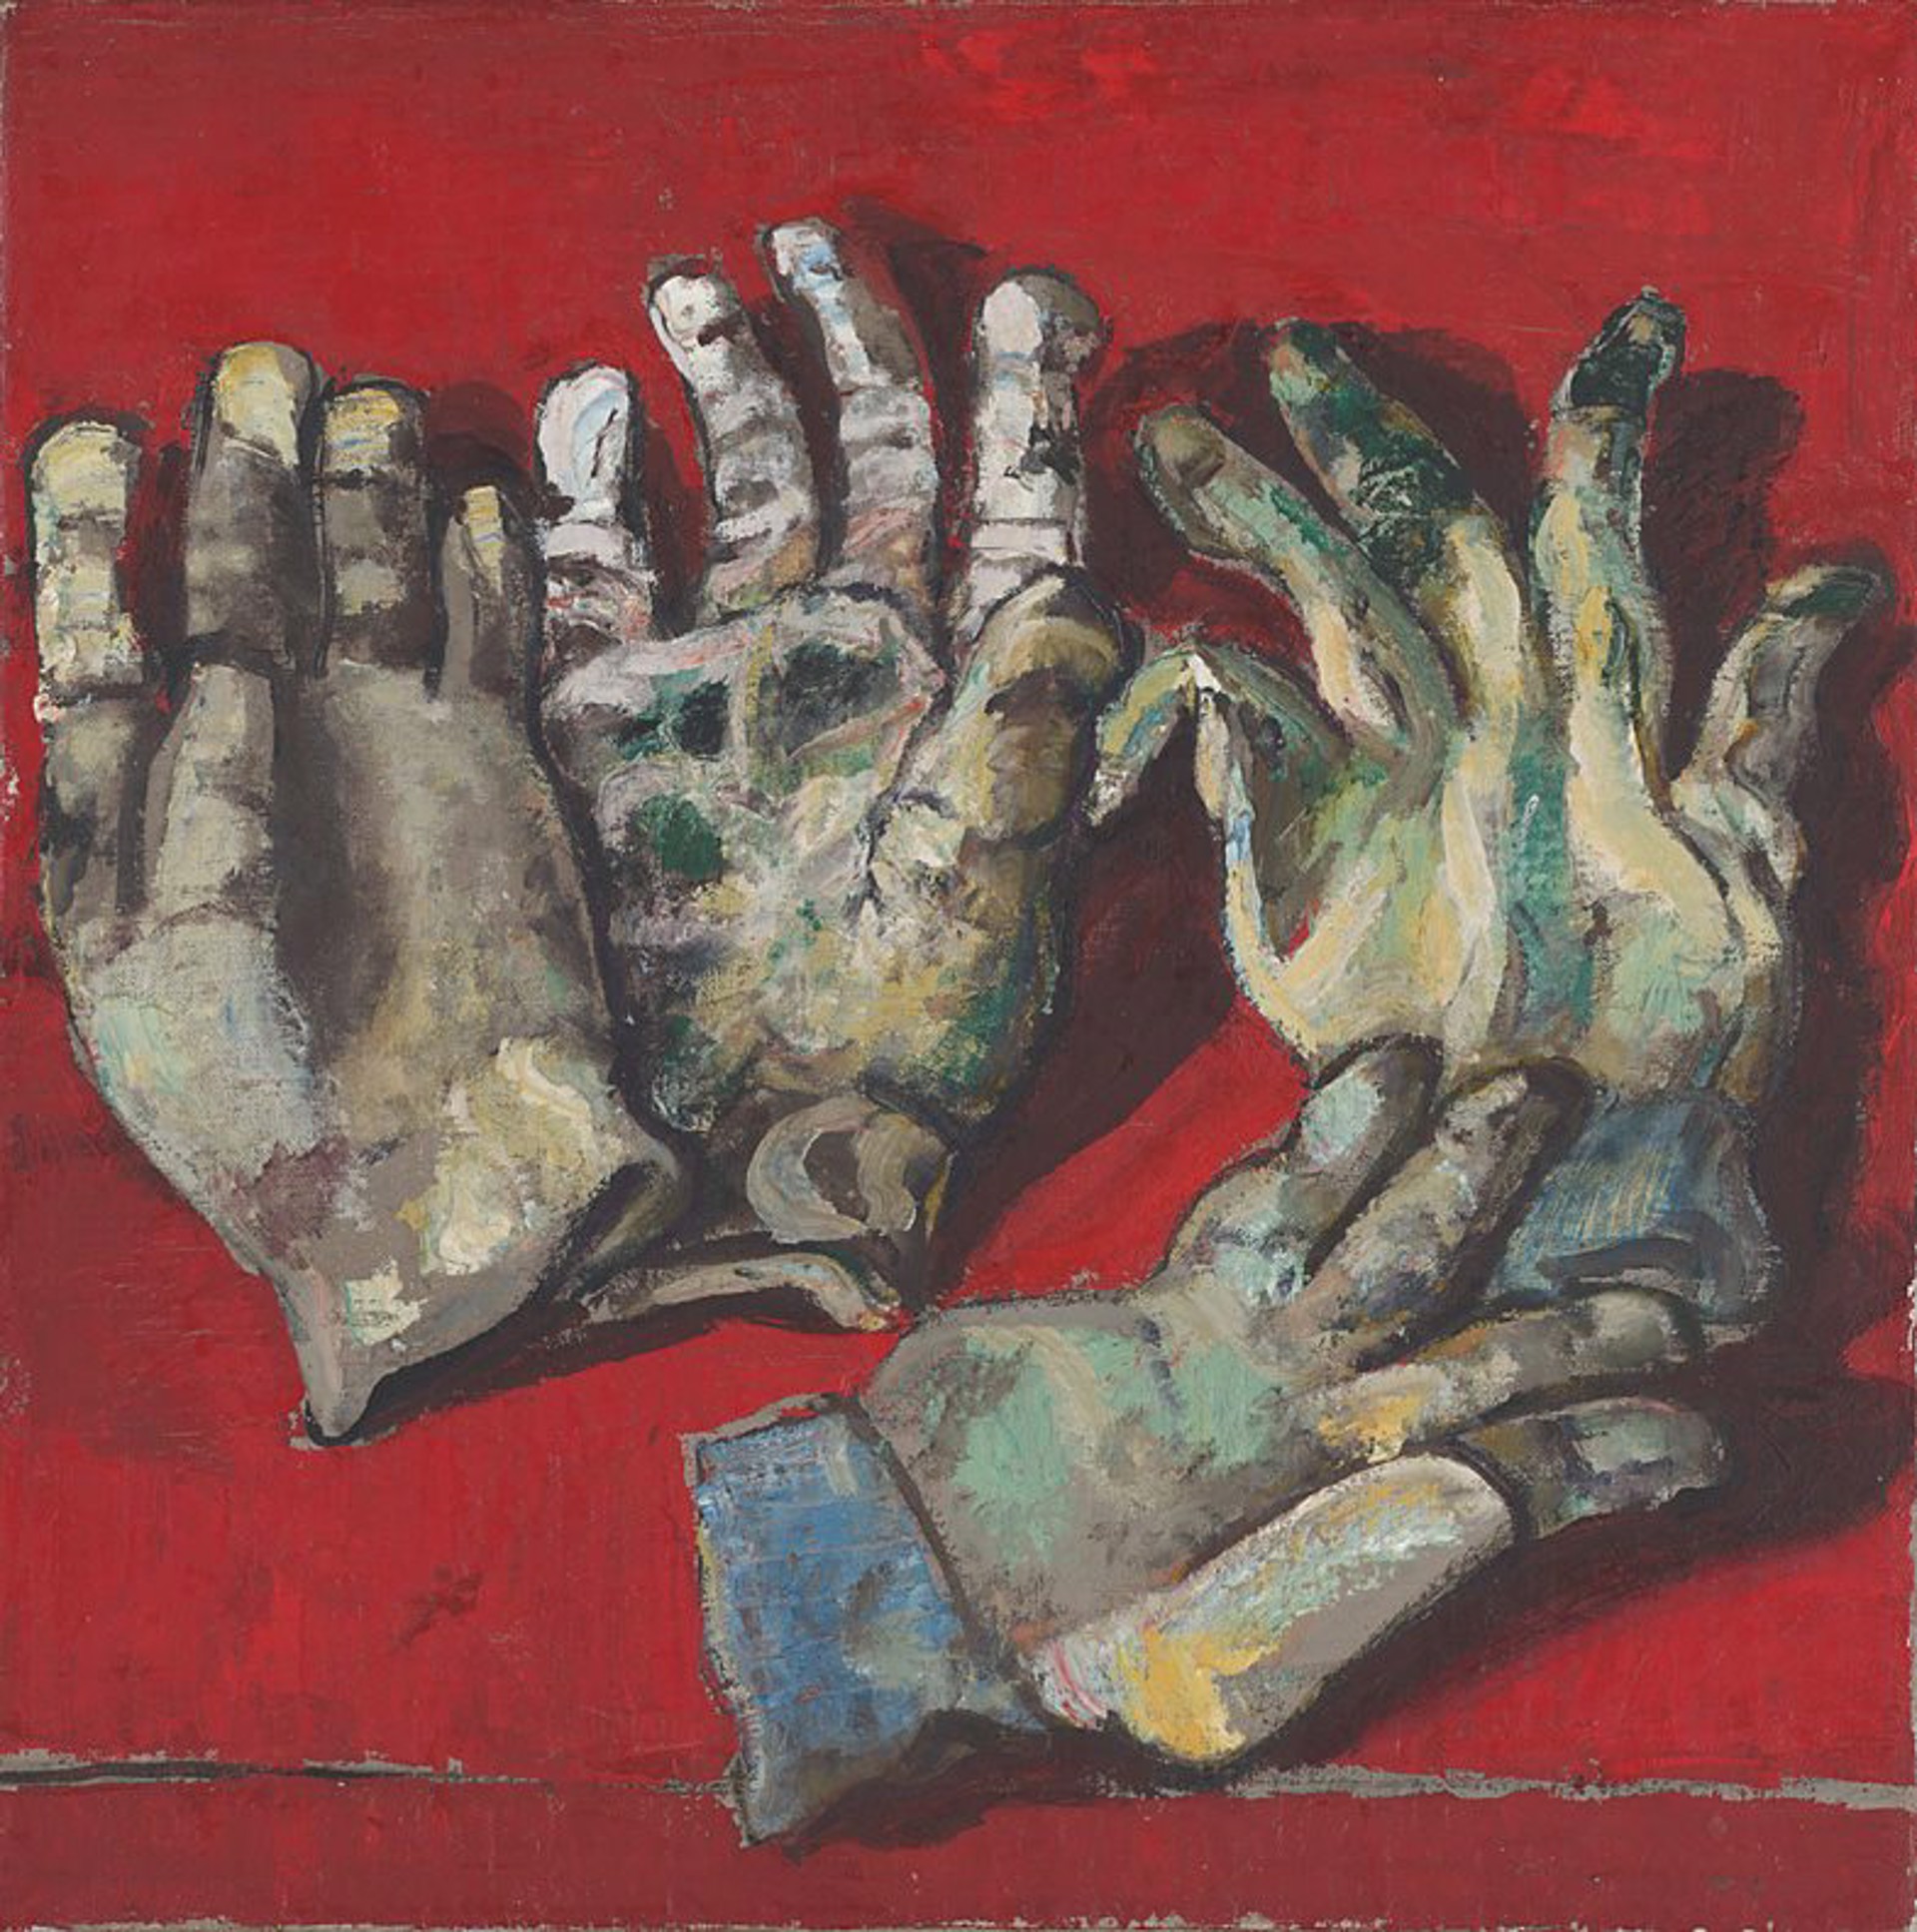 Gloves by Bernard Chaet